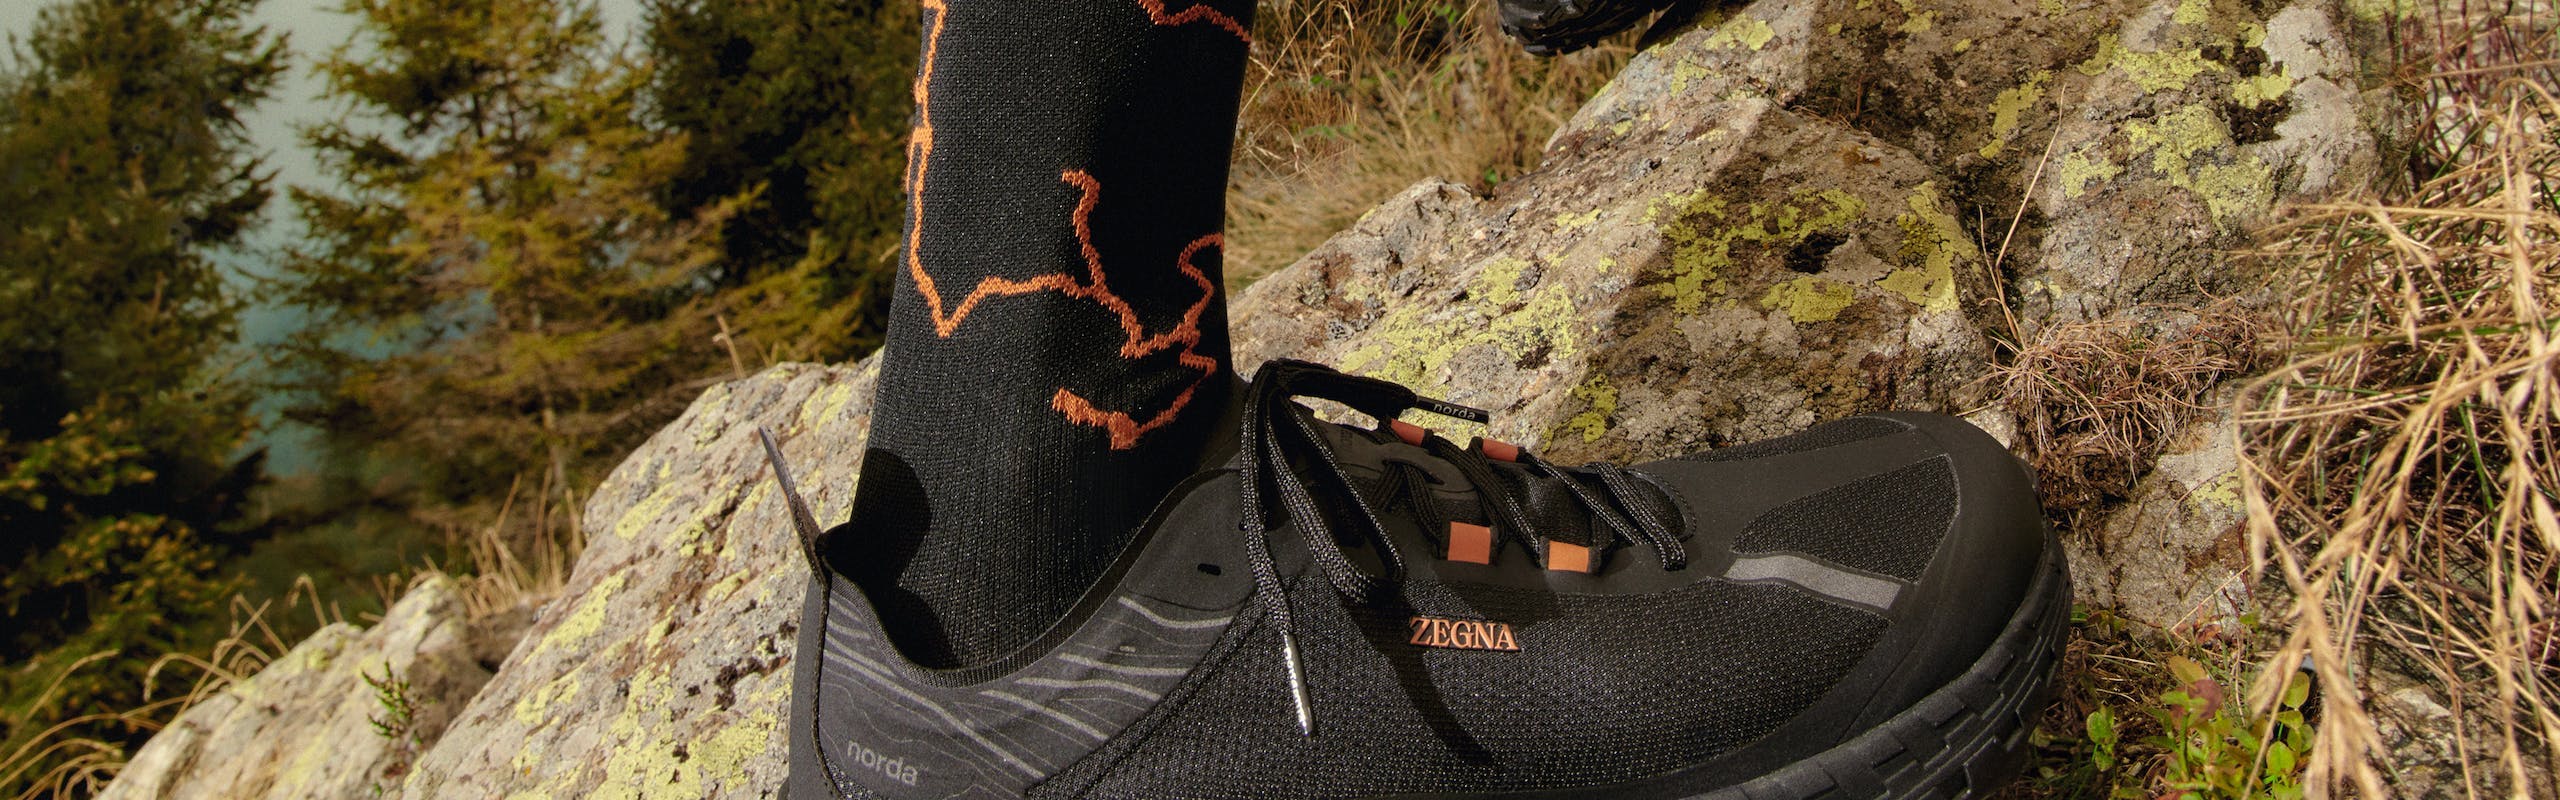 Le calzature del progetto ZEGNA x Norda creato in collaborazione tra la maison Zegna e il gruppo canadese Norda.